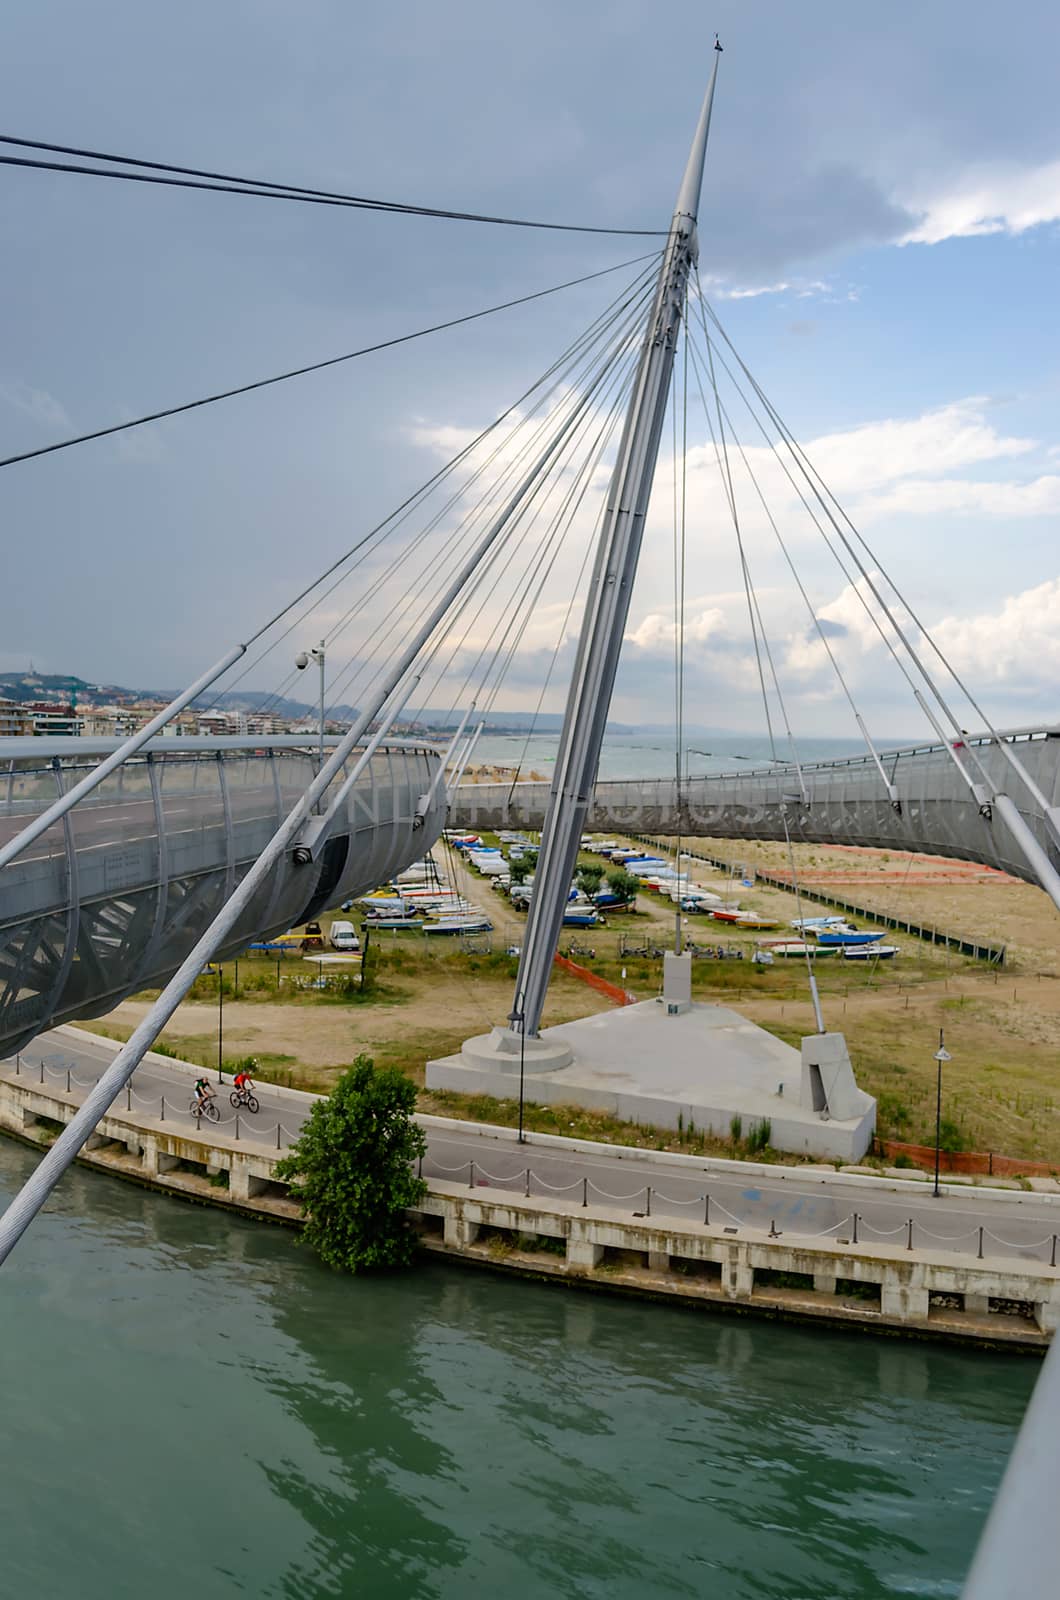 Bridge of the Sea, iconic landmark in Pescara, Italy by marcorubino